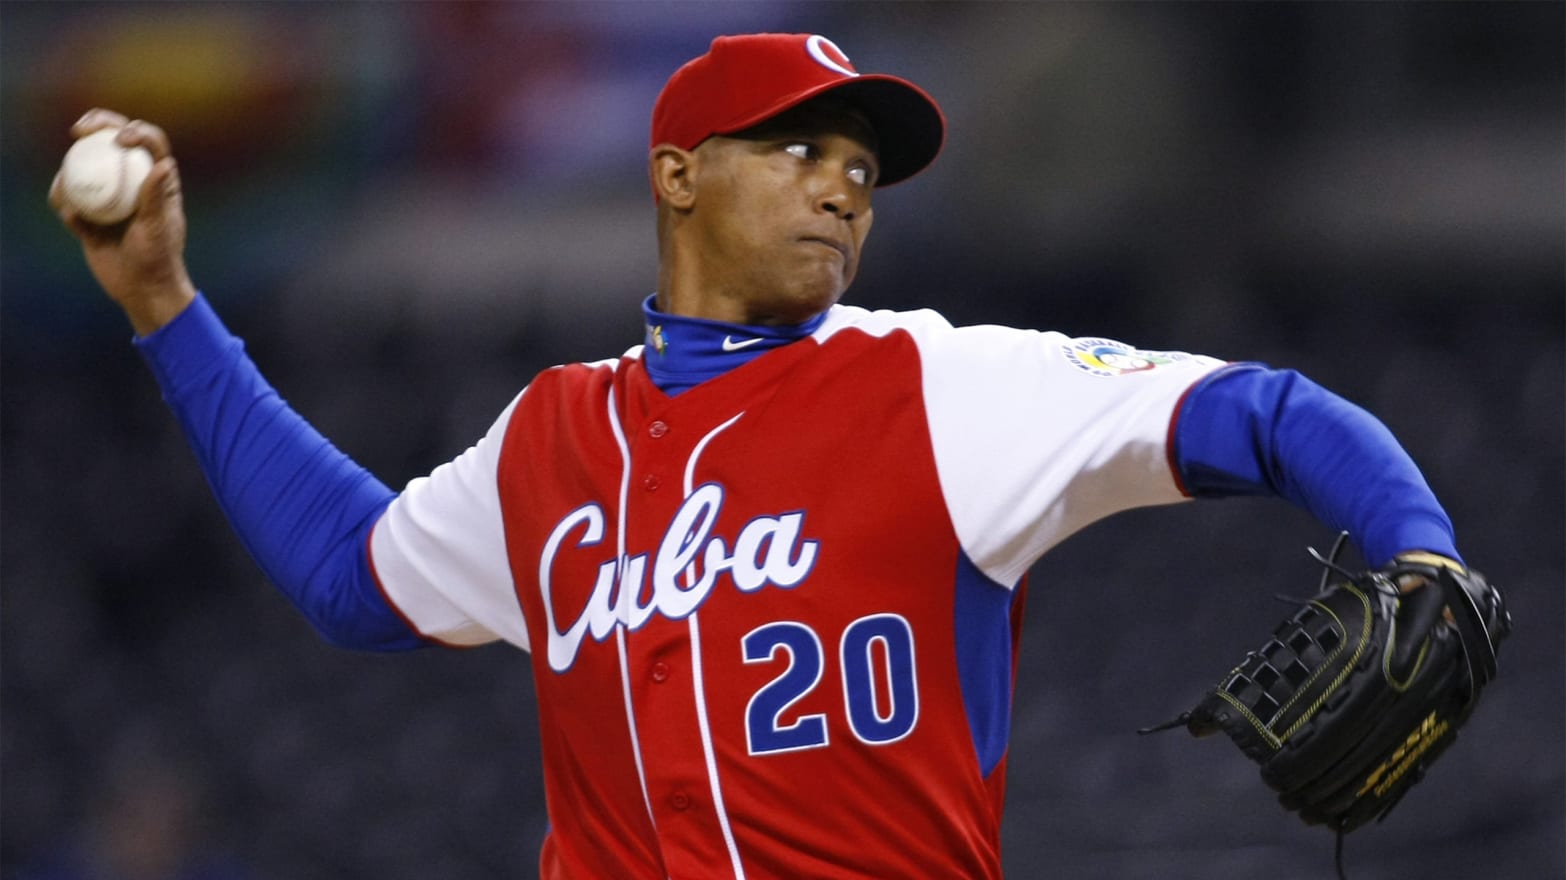 Is Major League Baseball Ready For Cuba's Players?